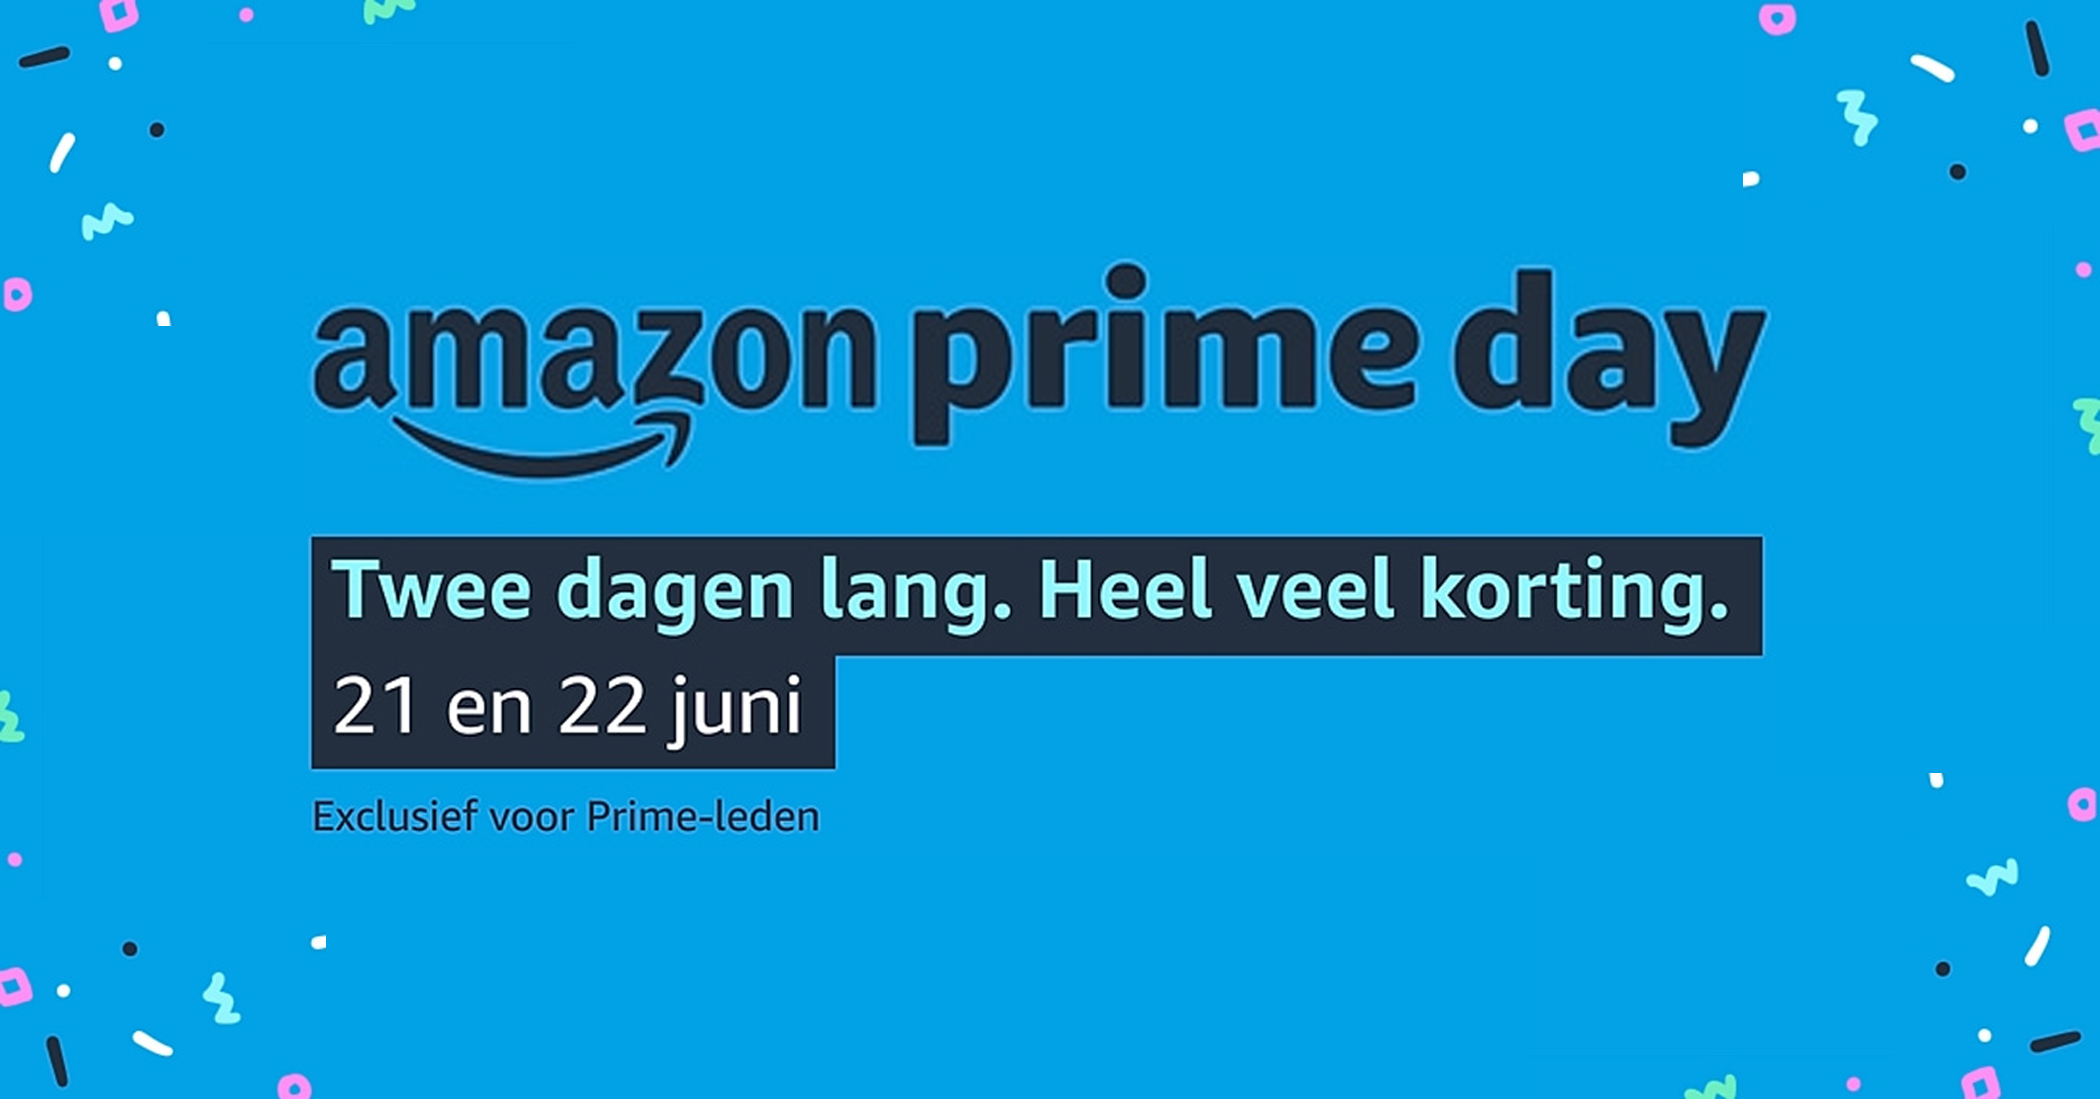 Gepensioneerd Mysterie beklimmen Amazon Prime Days 2021 kortingscode: €10 korting op alle aankopen vanaf €40